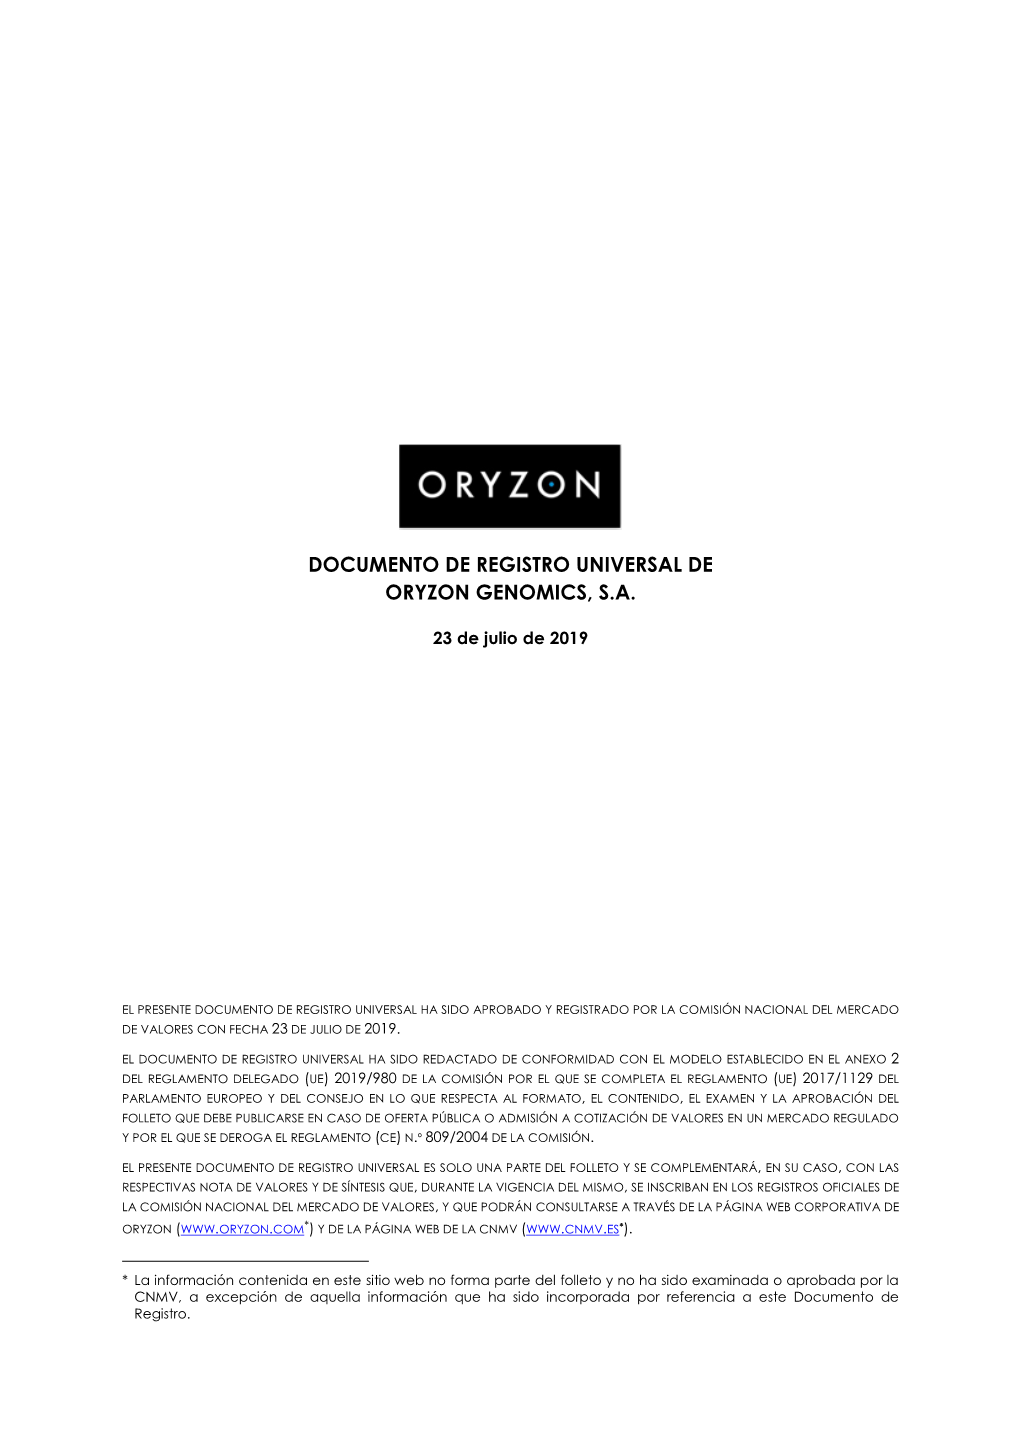 Documento De Registro Universal De Oryzon Genomics, S.A